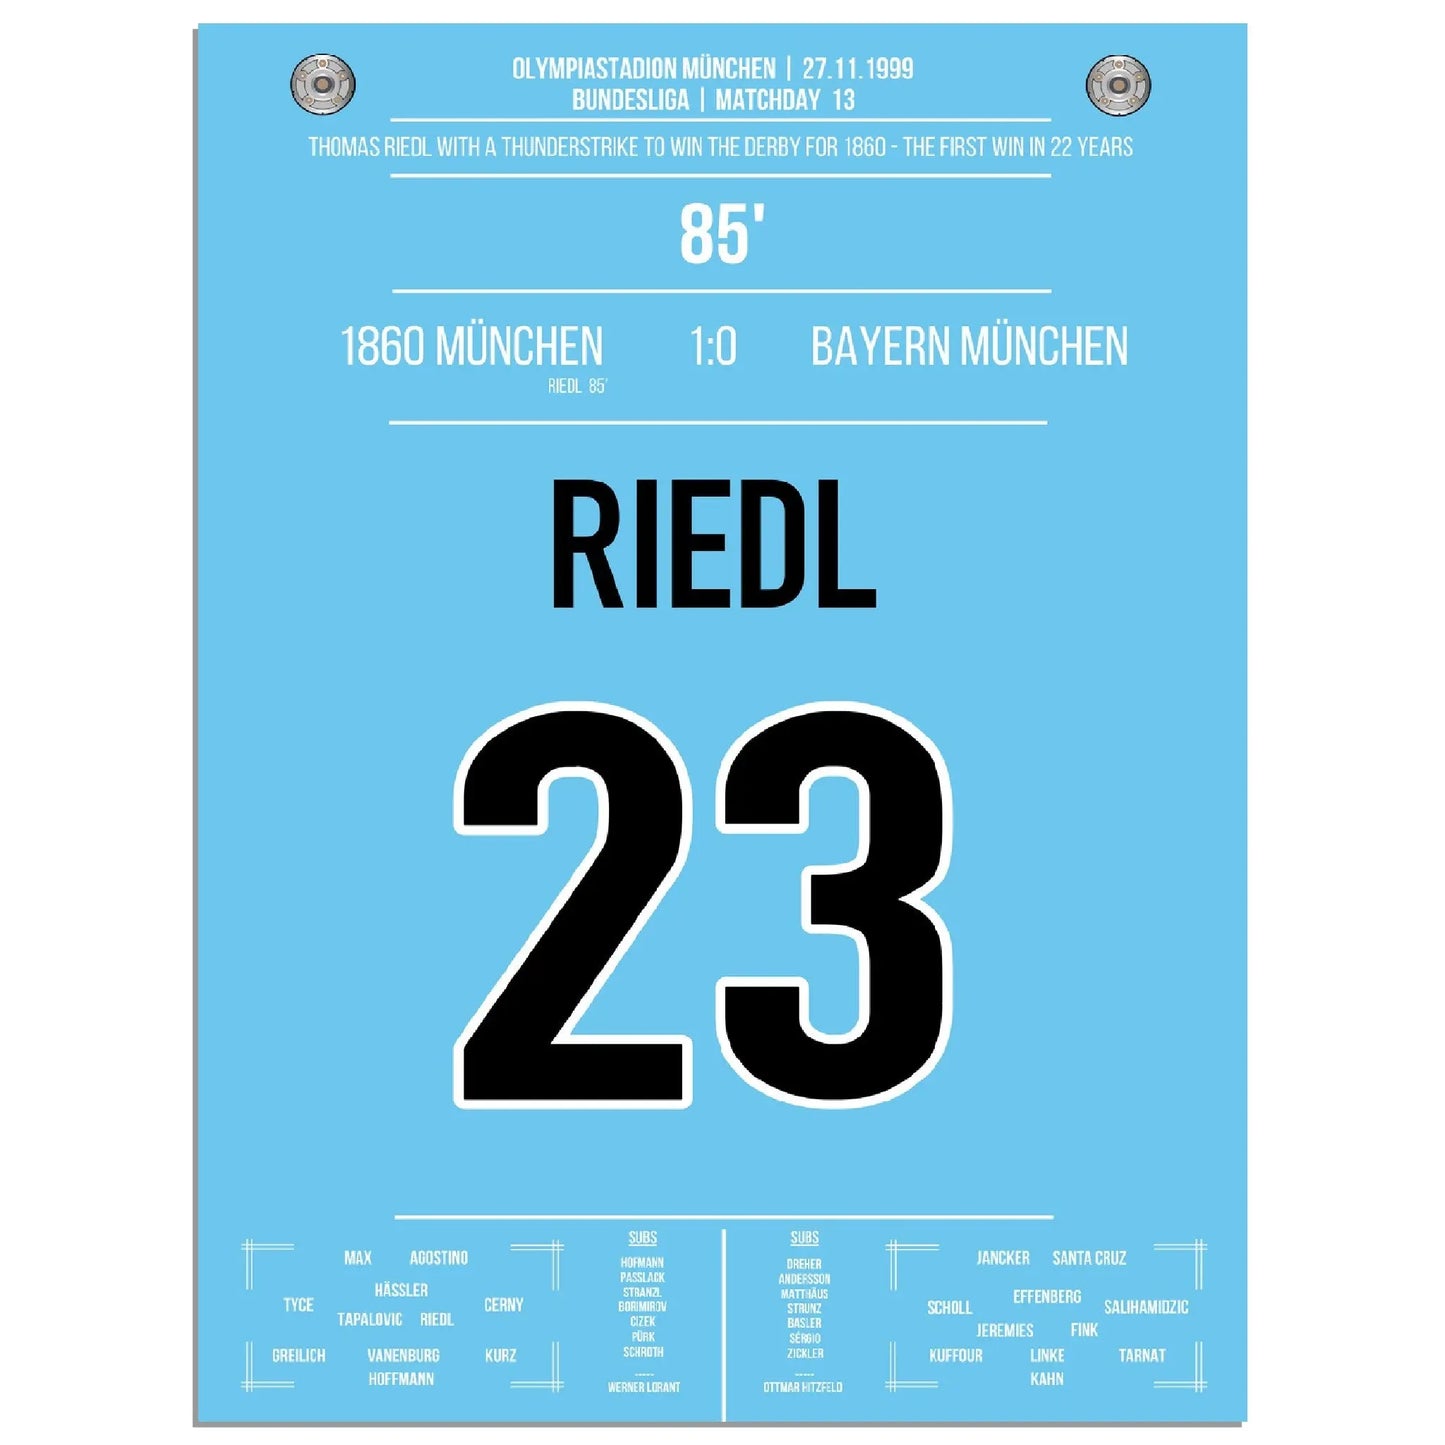 Riedl's Siegtreffer für die Löwen im Derby gegen Bayern 1999 